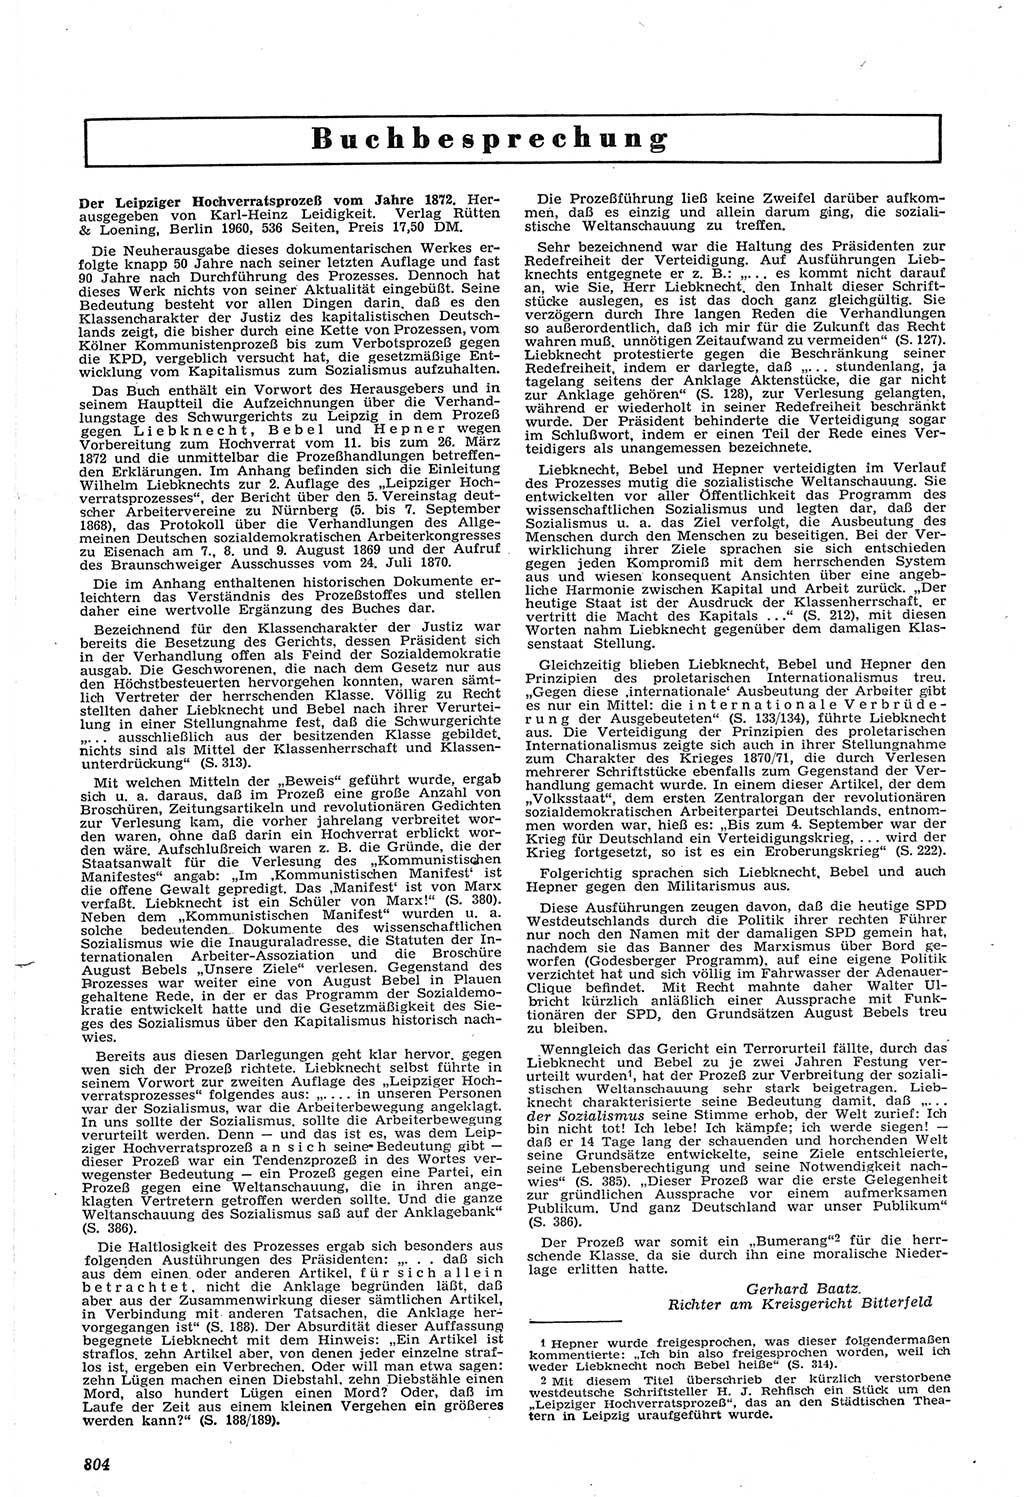 Neue Justiz (NJ), Zeitschrift für Recht und Rechtswissenschaft [Deutsche Demokratische Republik (DDR)], 14. Jahrgang 1960, Seite 804 (NJ DDR 1960, S. 804)